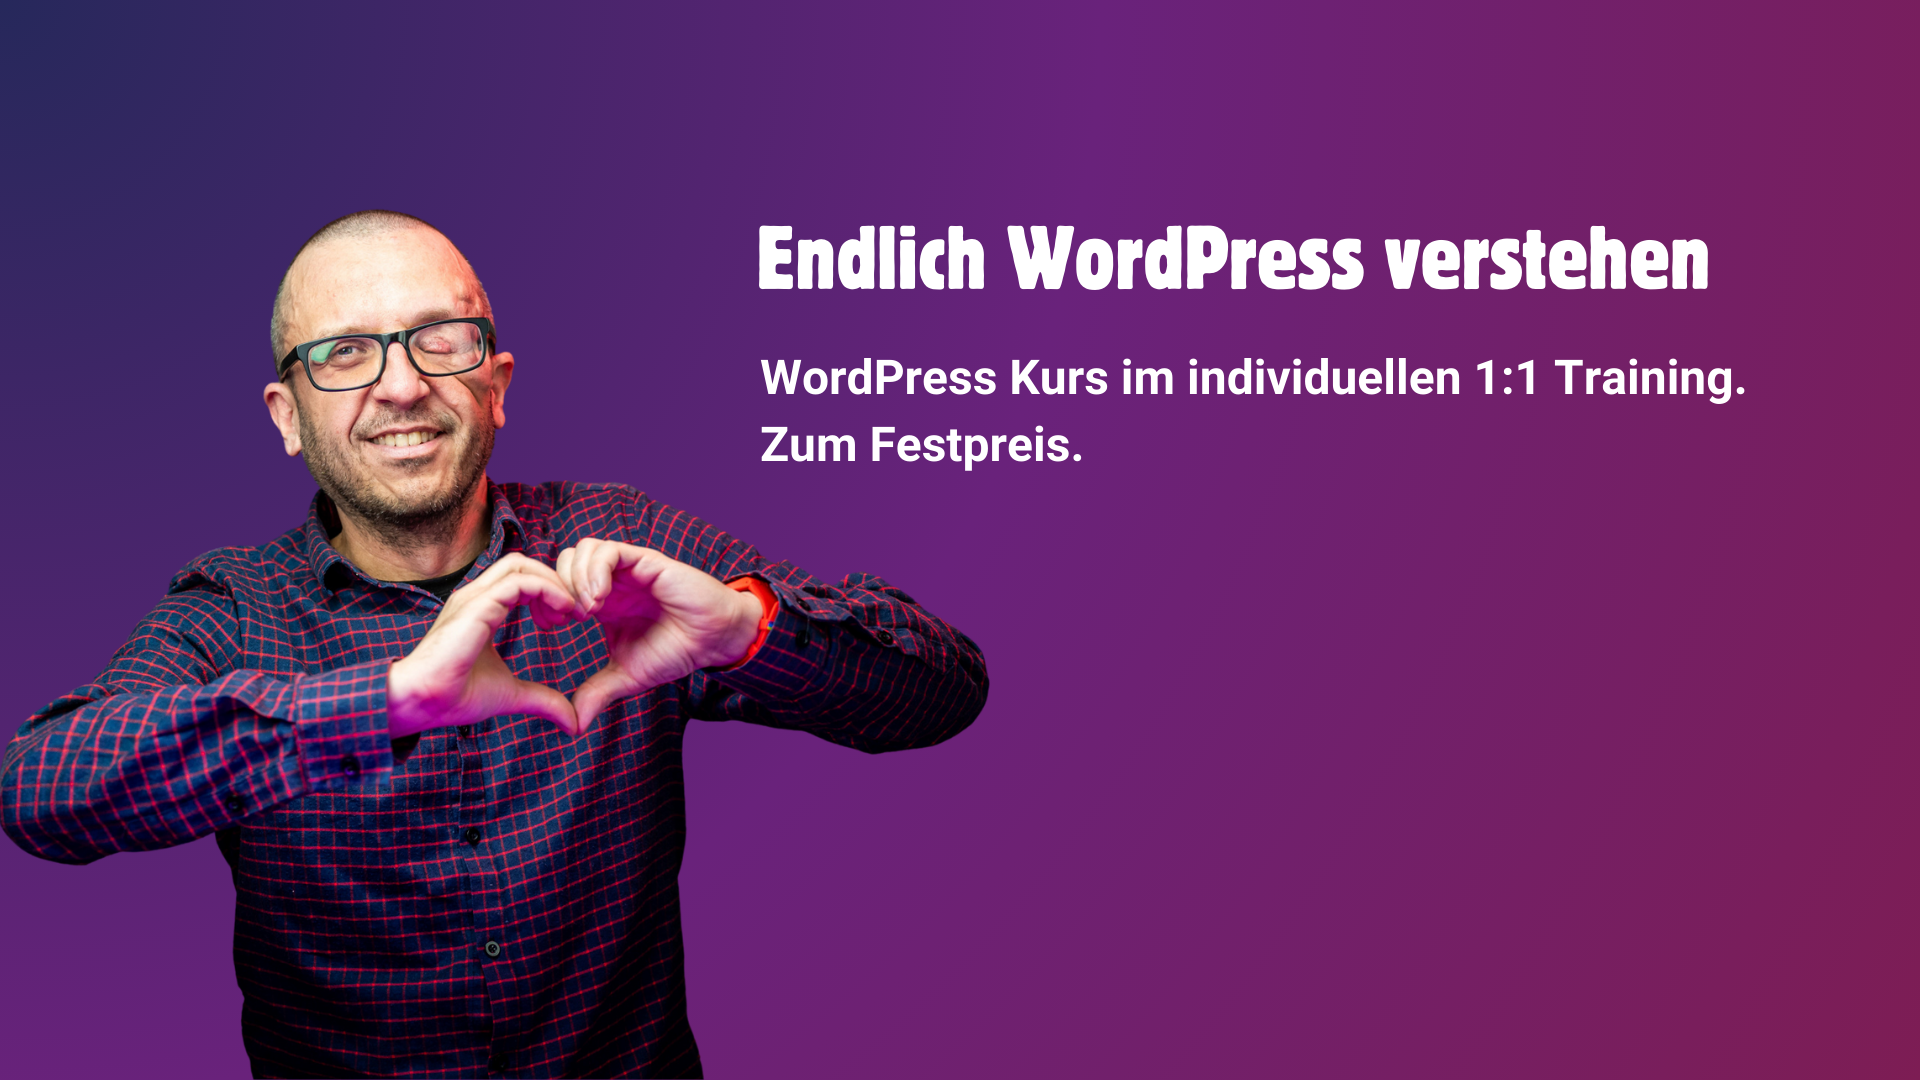 Sharepic mit Johannes und Schriftzug: "Endlich WordPress verstehen"